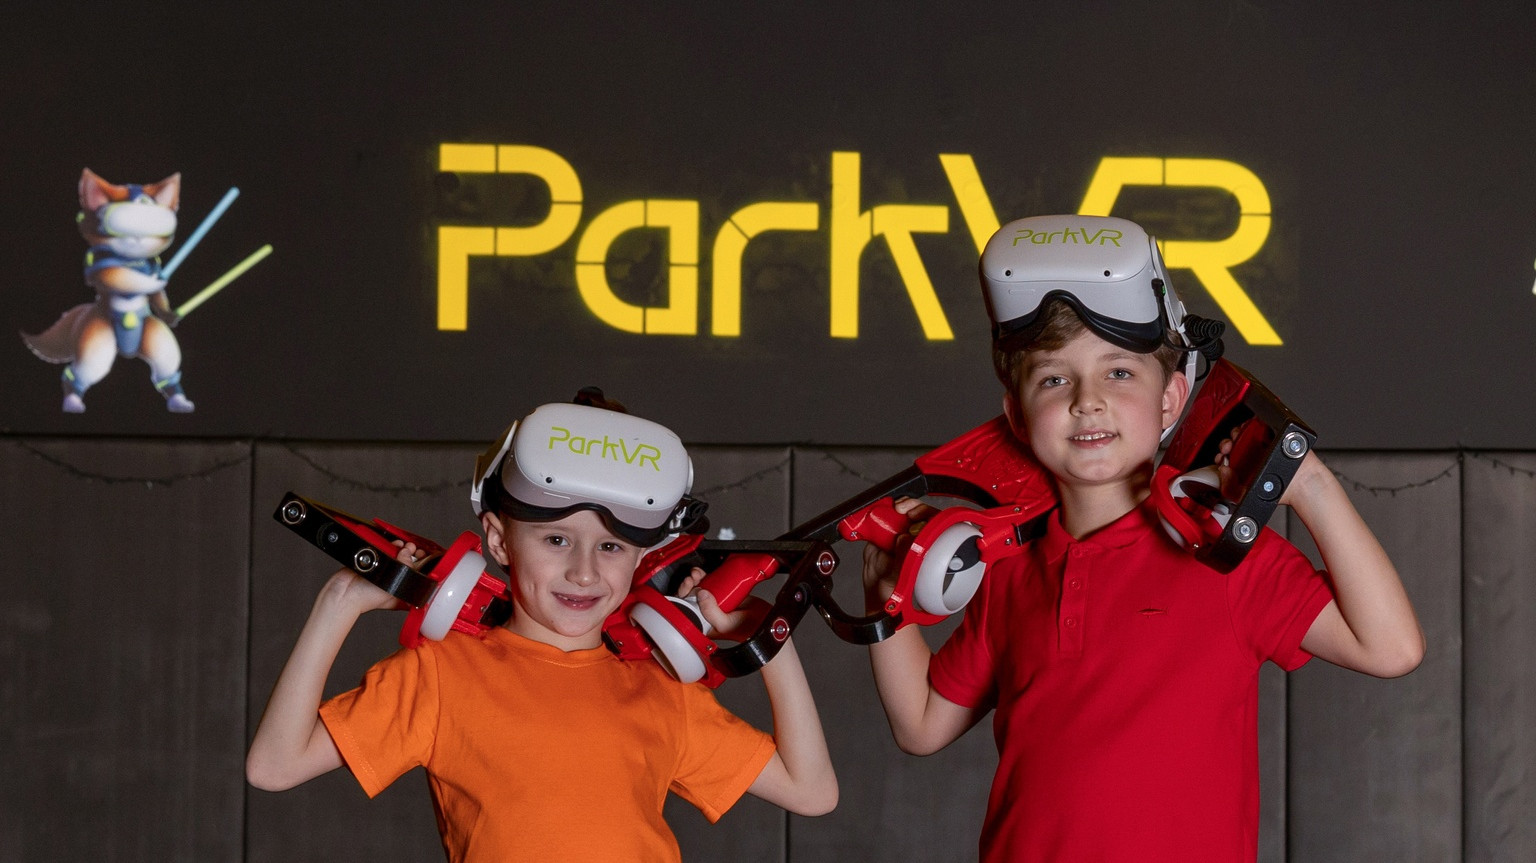 ParkVR - арена виртуальной реальности в ТРЦ Парк Хаус, г. Екатеринбург